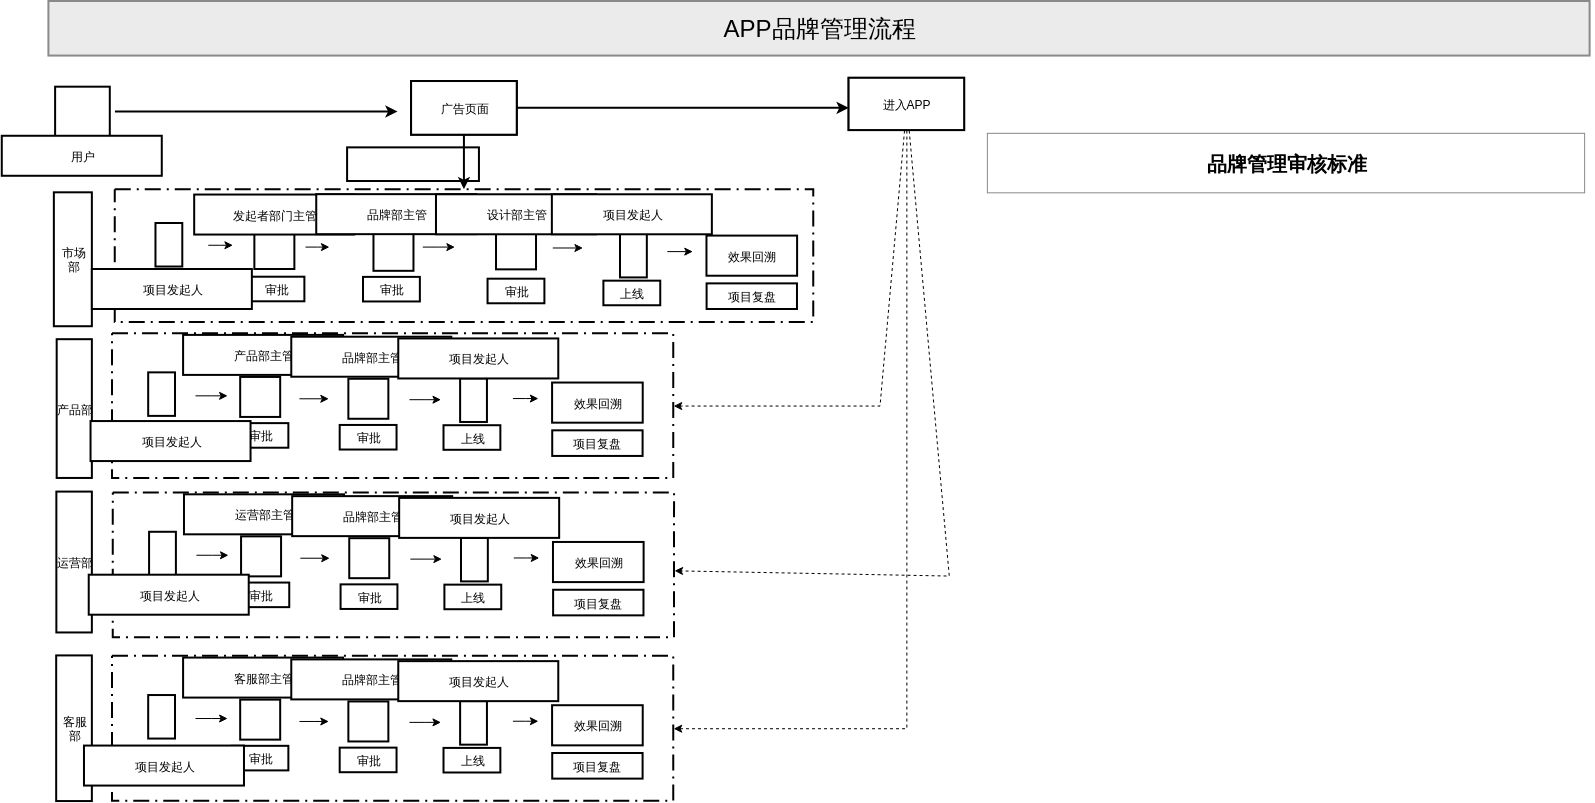 APP品牌管理流程图